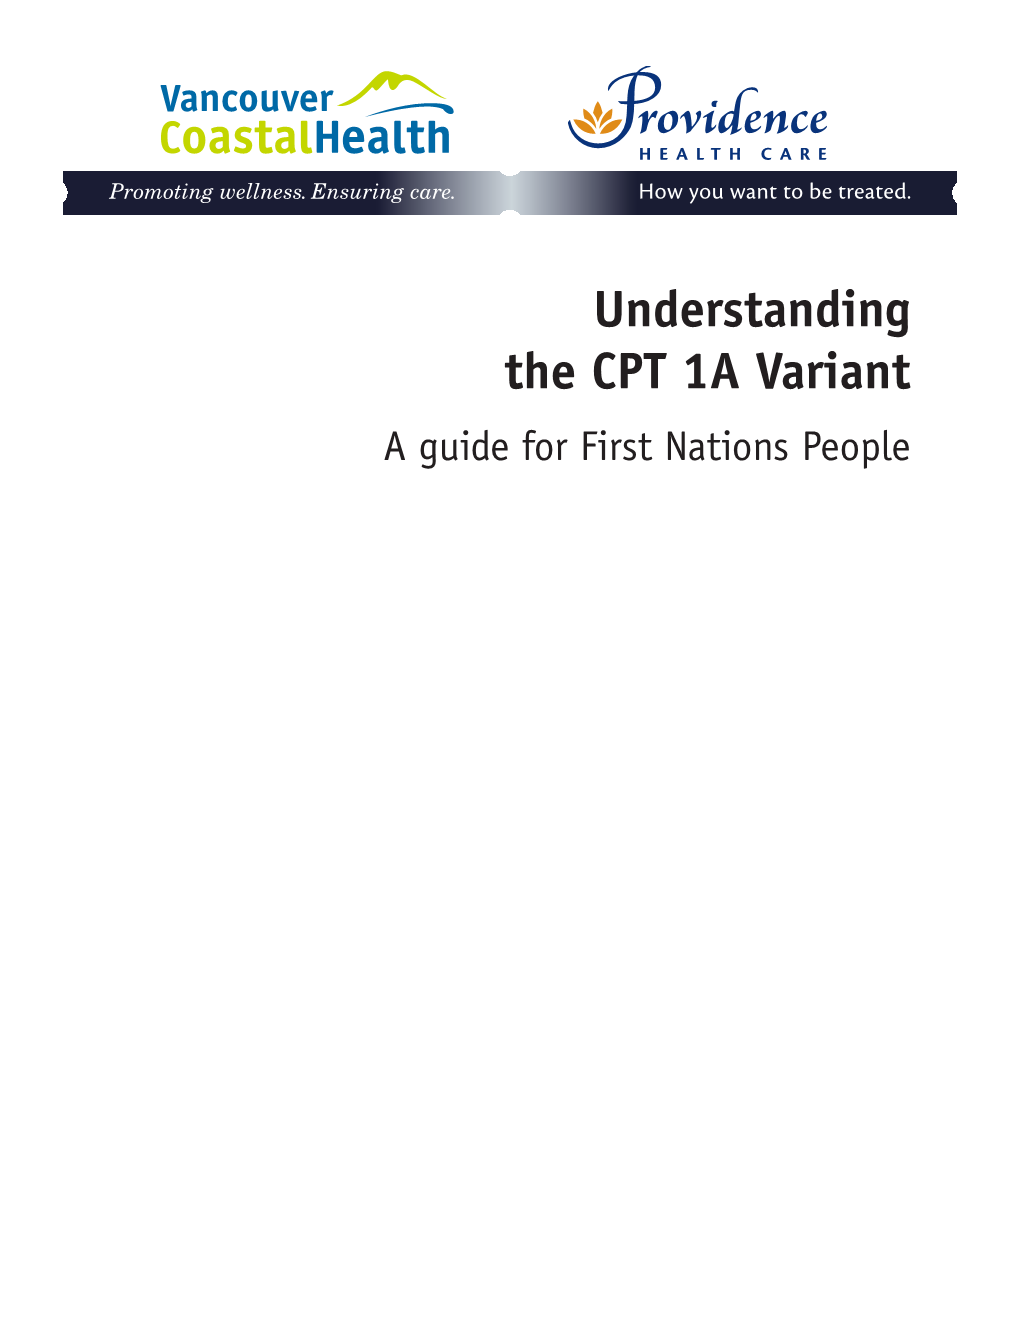 Understanding CPT 1A Deficiency